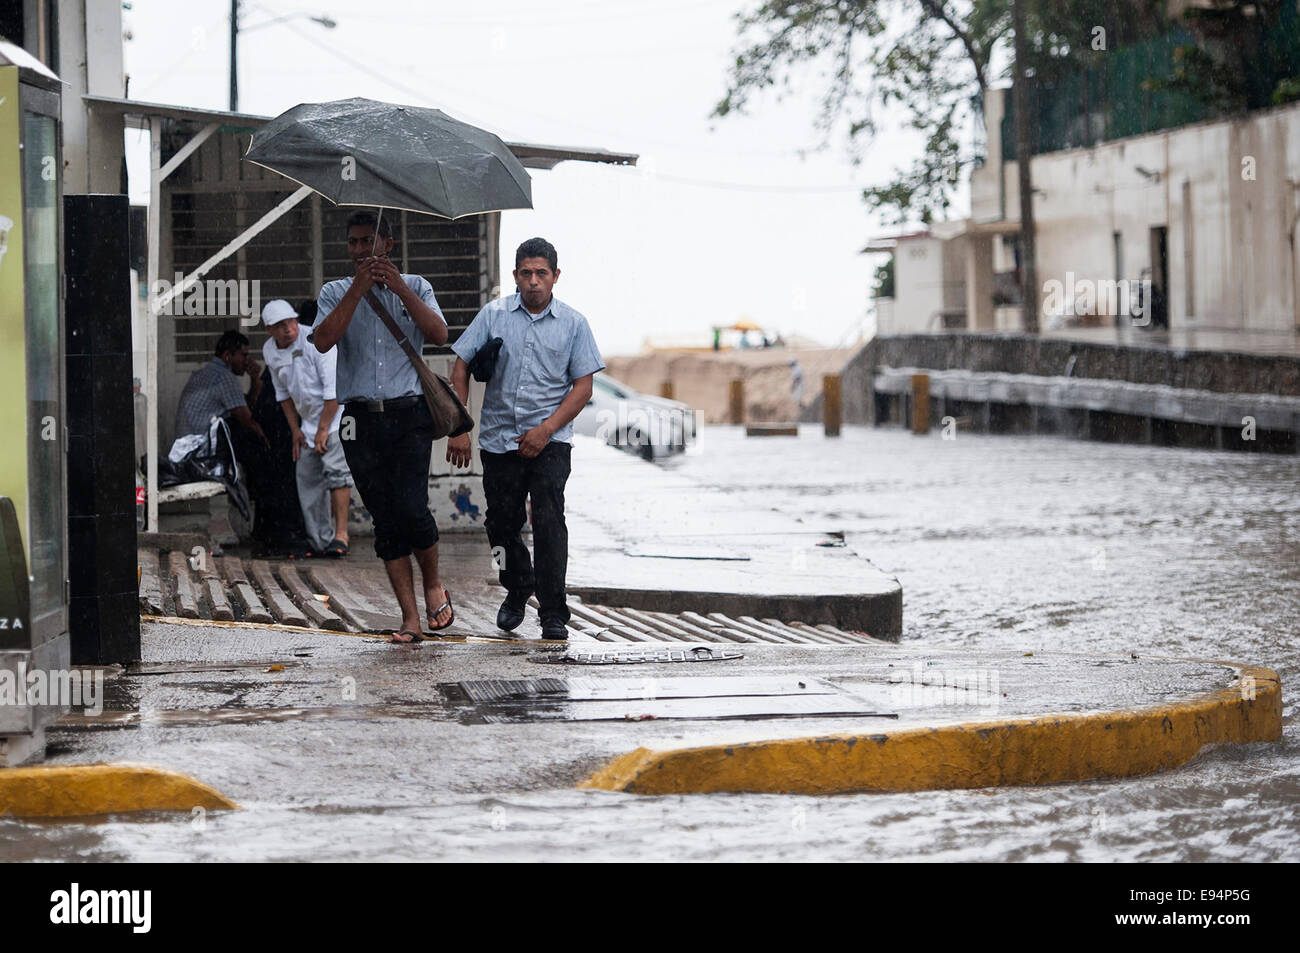 Guerrero, México. 19 Oct, 2014. Un hombre sostiene un paraguas bajo la  lluvia, en el puerto de Acapulco, Guerrero, México, el 19 de octubre, 2014.  La intensa lluvia generada por la tormenta